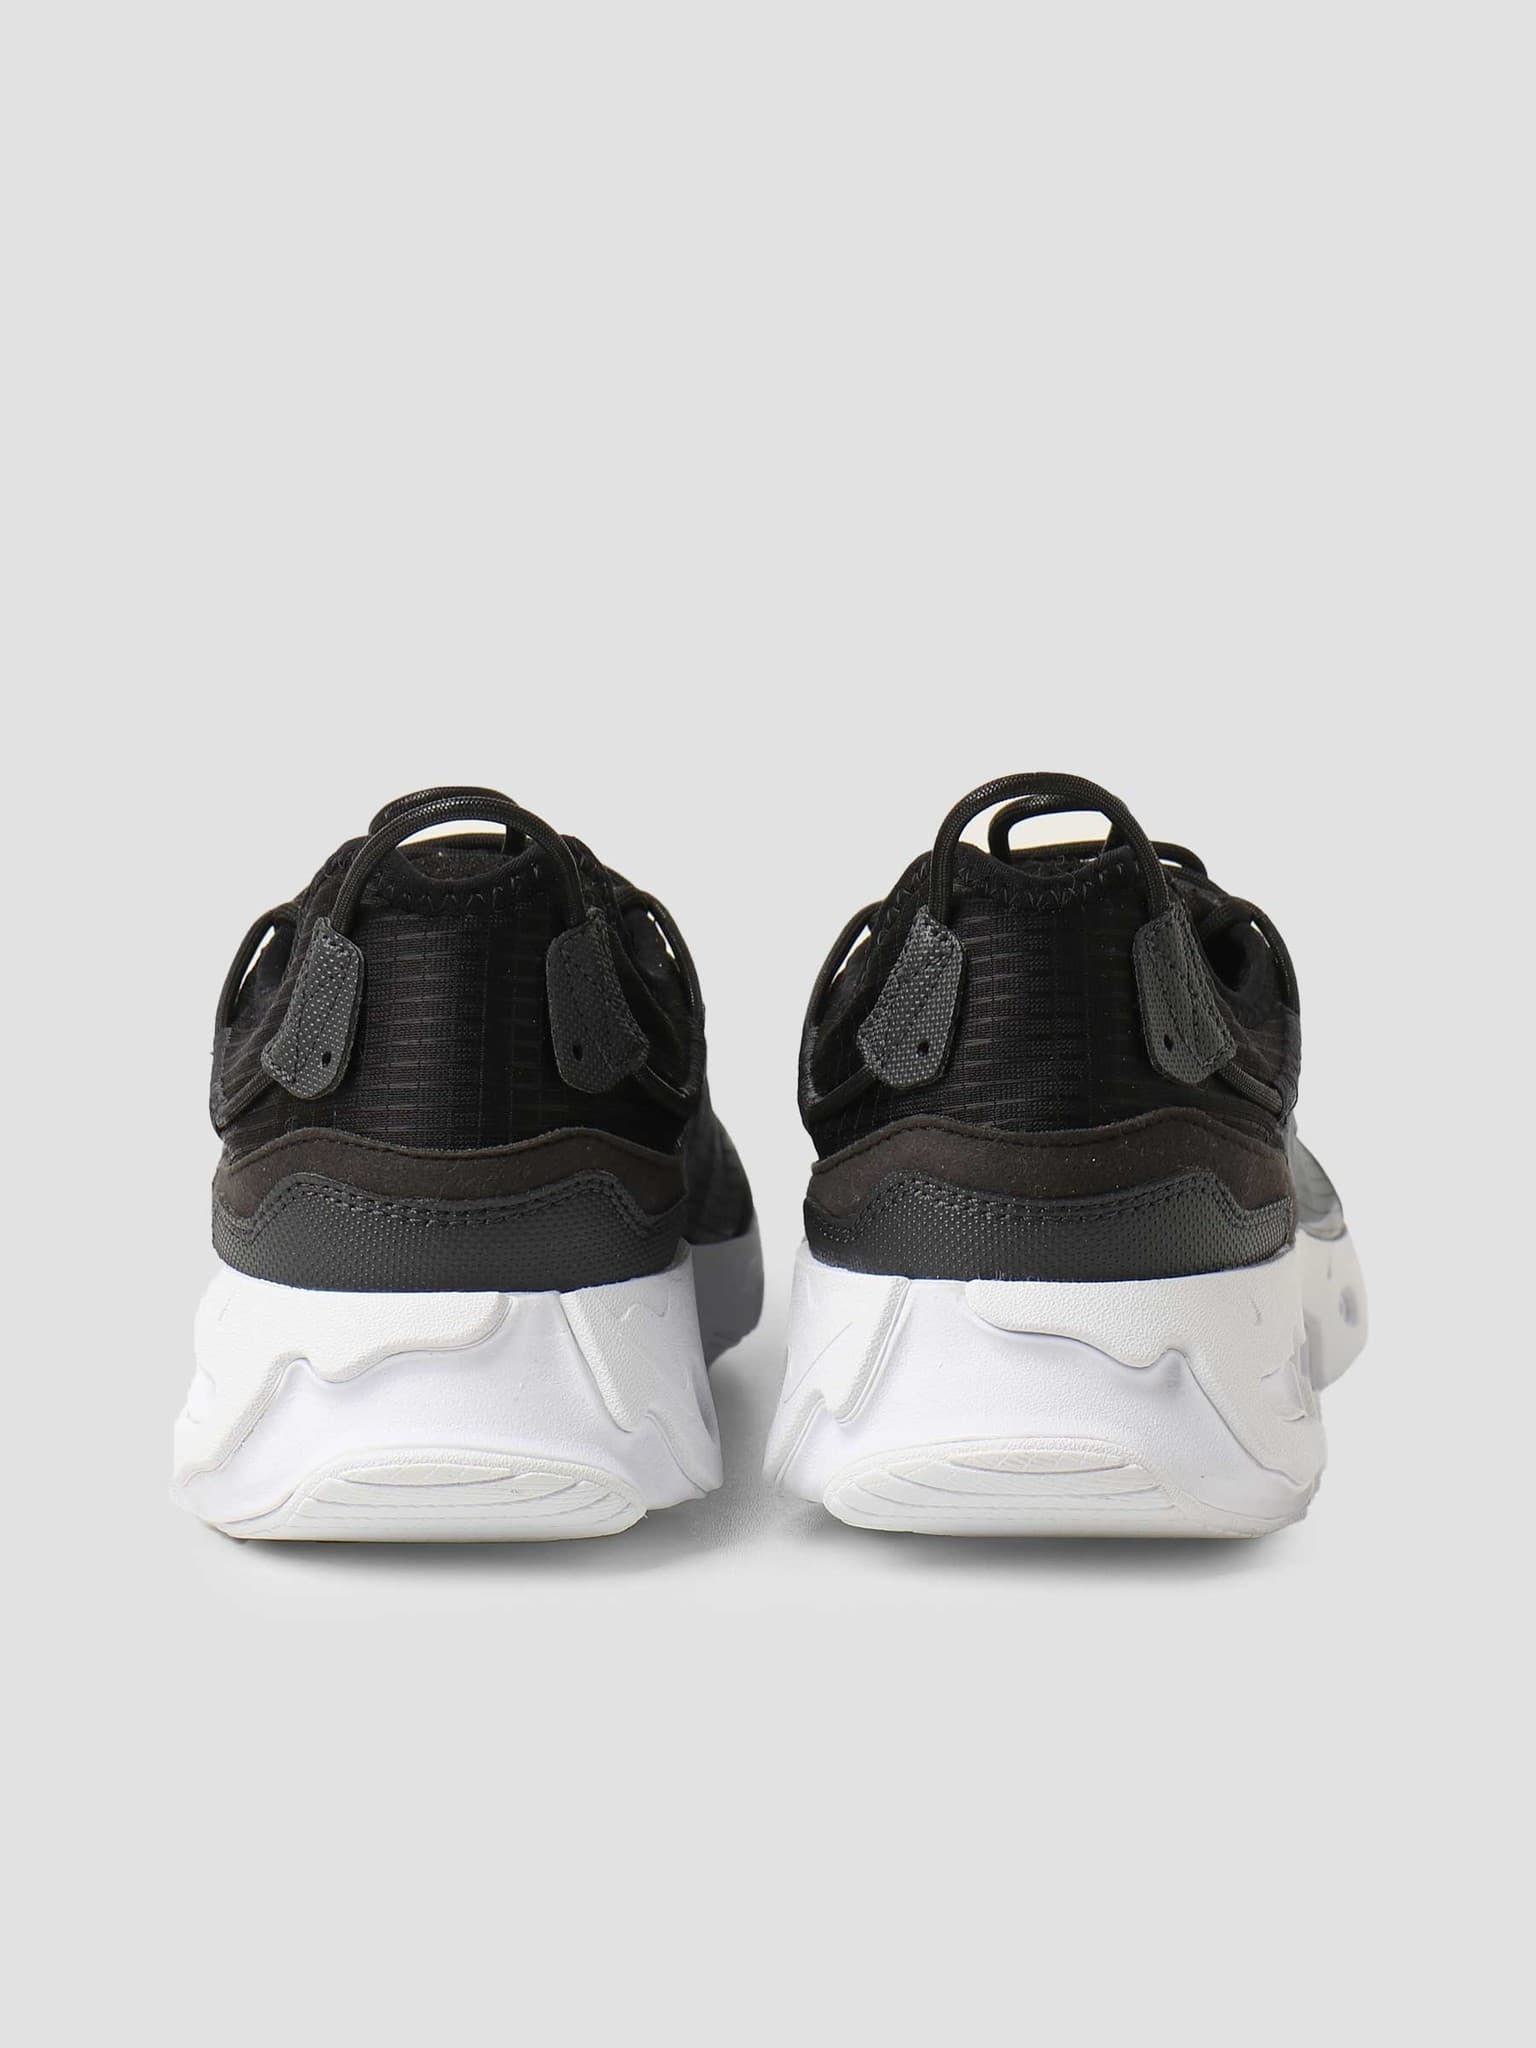 Nike React Live Black White Dk Smoke Grey CV1772-003